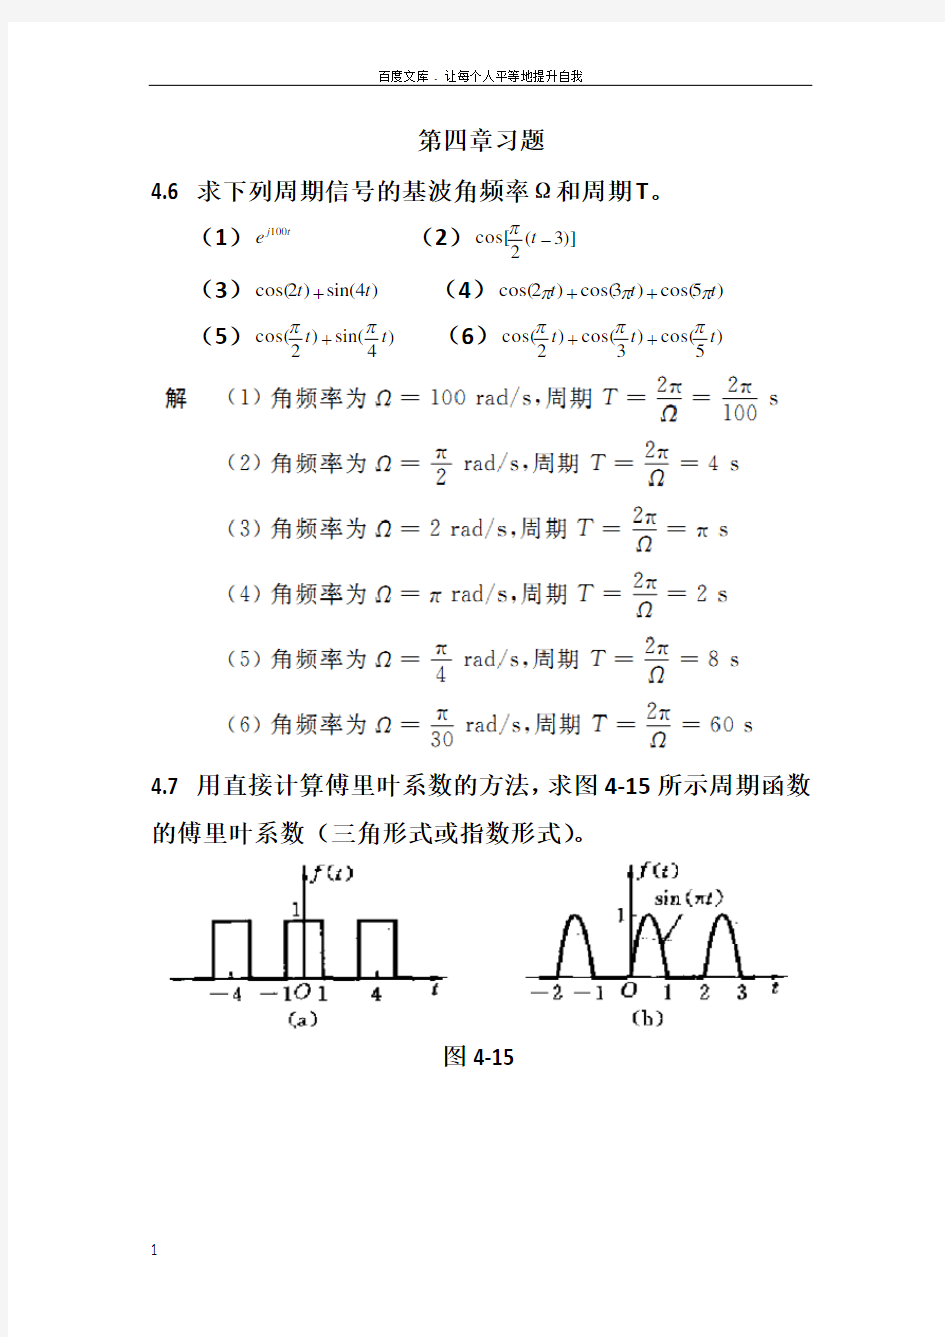 信号与线性系统分析-(吴大正-第四版)第四章习题答案